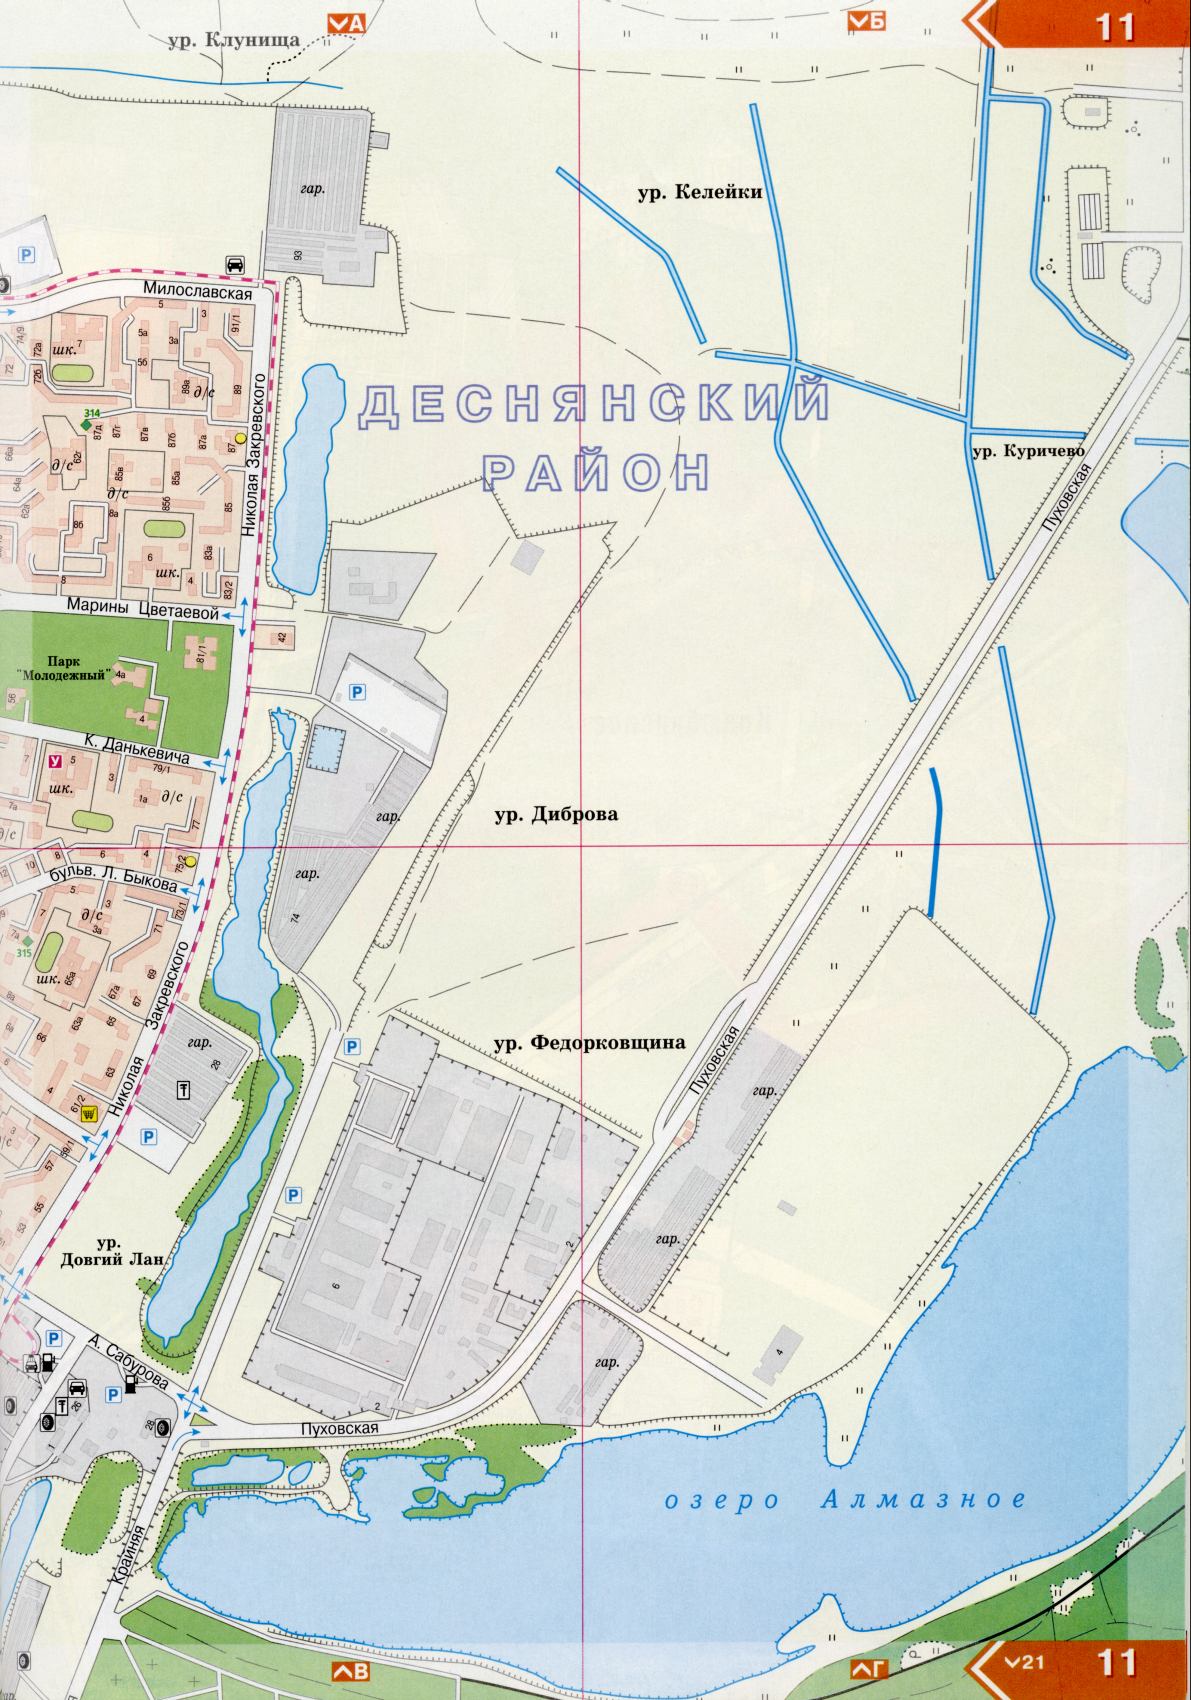 Kiew Karte Details 1cm = 150m für 45 Blatt. Karte von Kiew aus dem Atlas von Autobahnen. Laden Sie eine detaillierte Karte, I0